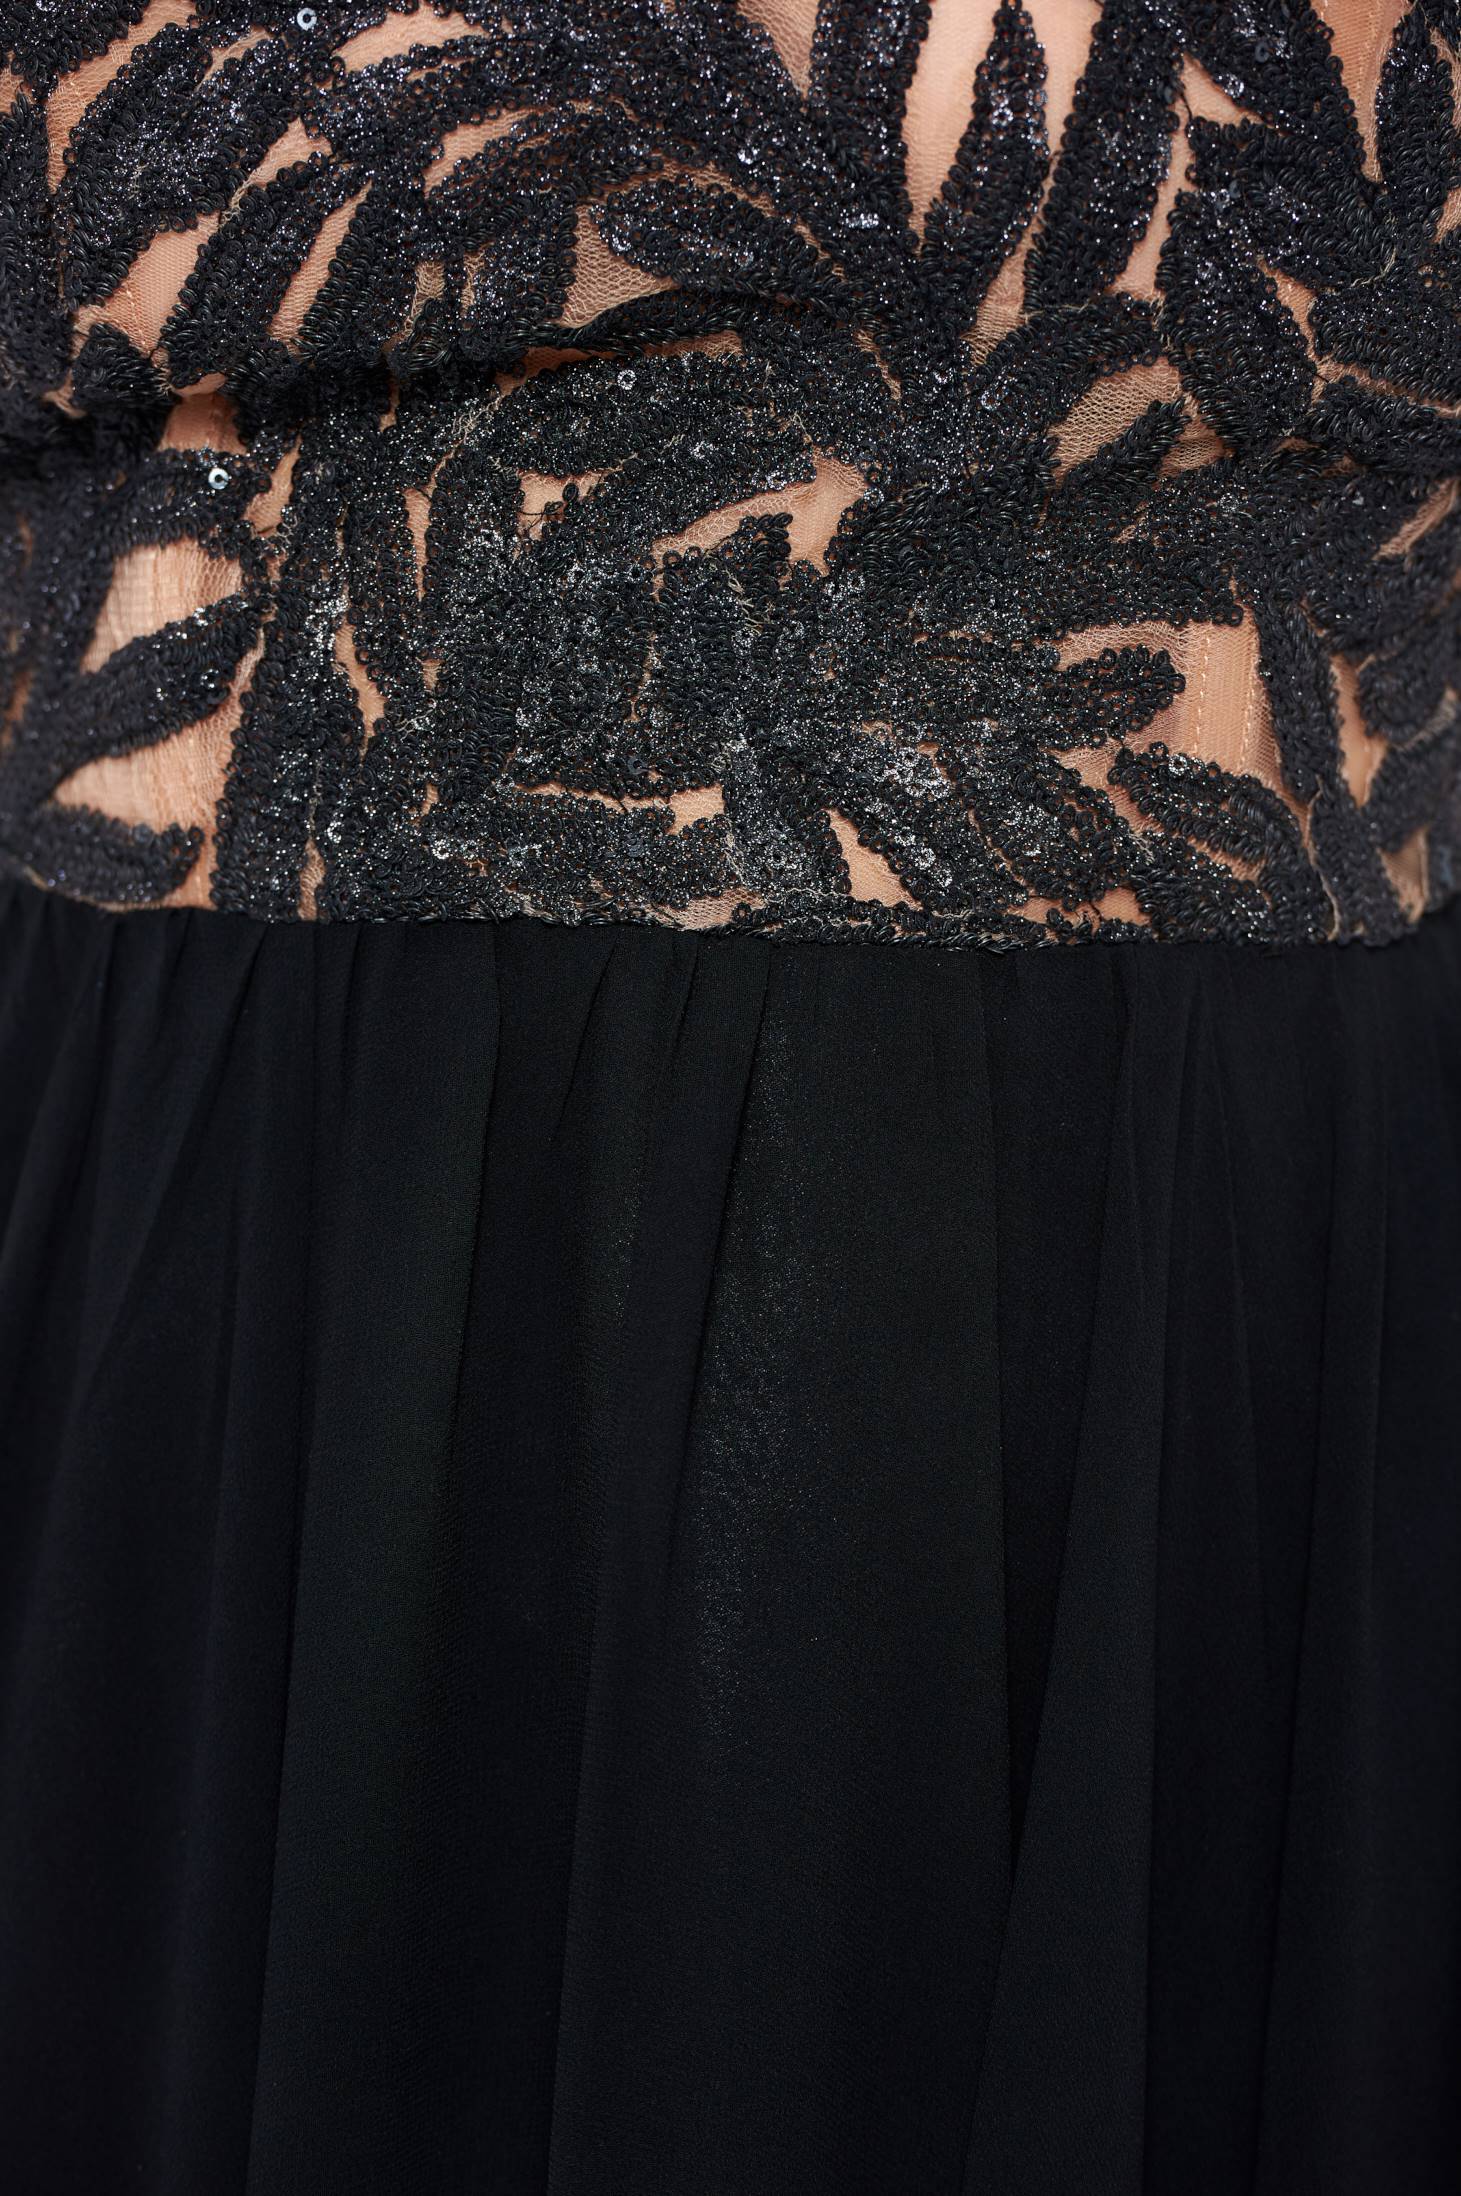 Ana Radu Gorgeous Black Dress